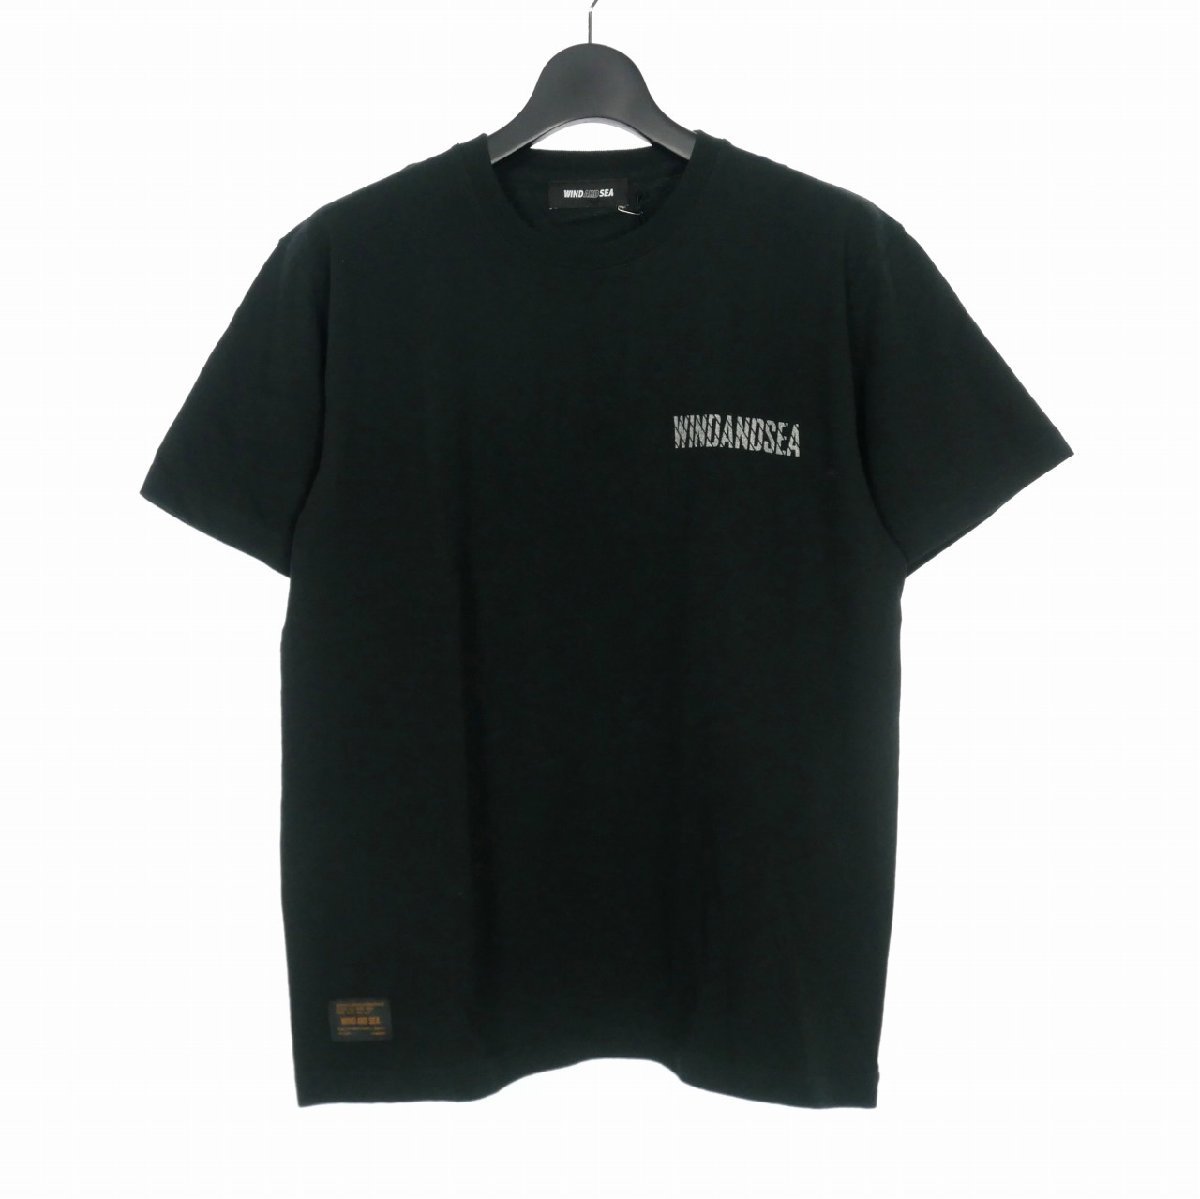 未使用品 ウィンダンシー WIND AND SEA ロゴ プリント Tシャツ カットソー 半袖 M ブラック 黒 メンズ